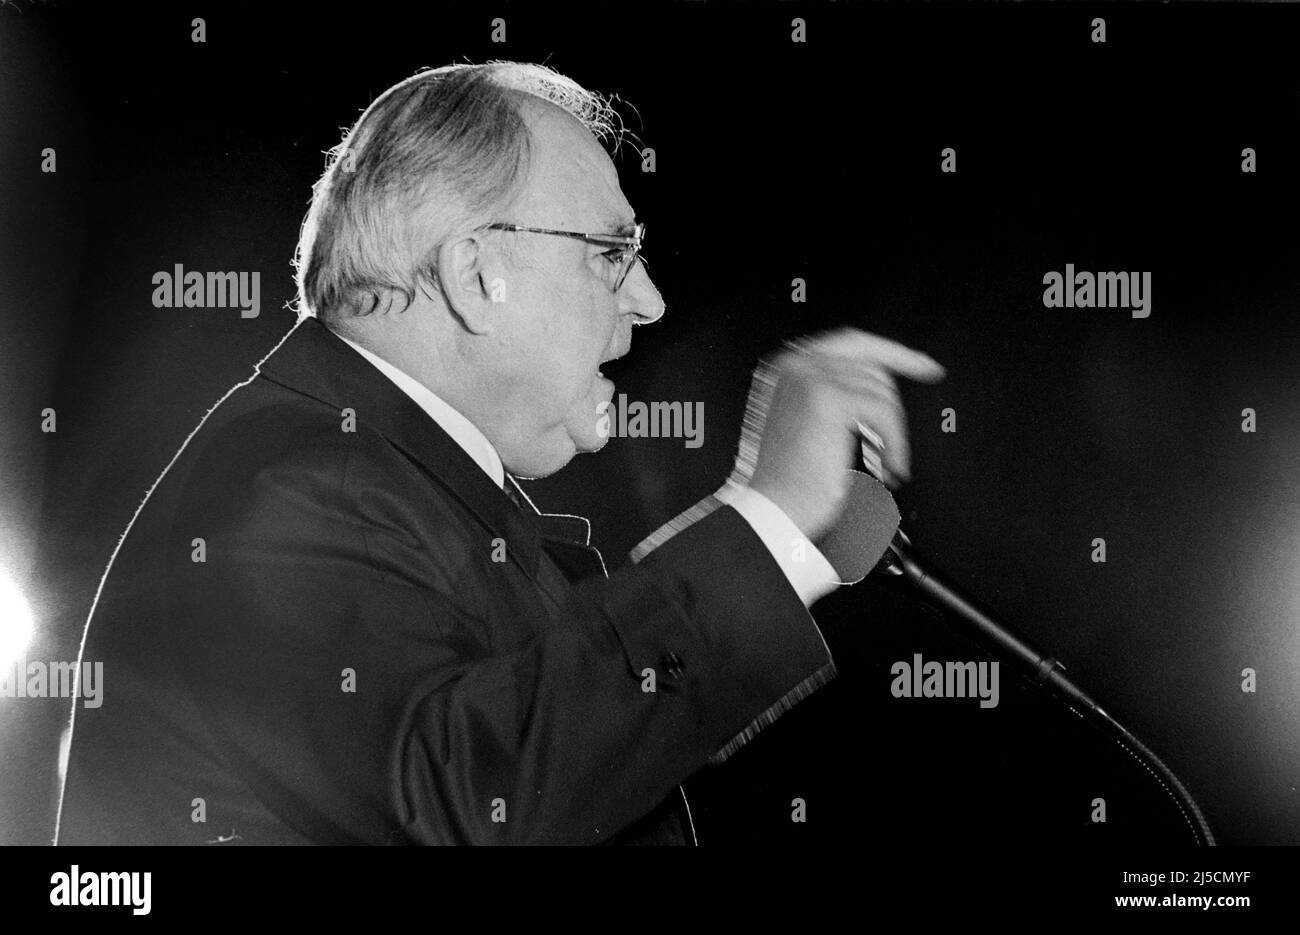 Erfurt, DEU, 20.02.1990 - Bundeskanzler Helmut Kohl spricht auf dem Erfurter Domplatz. Dies war Kohls erster Wahlkampfauftritt in der DDR. [Automatisierte Übersetzung] Stockfoto